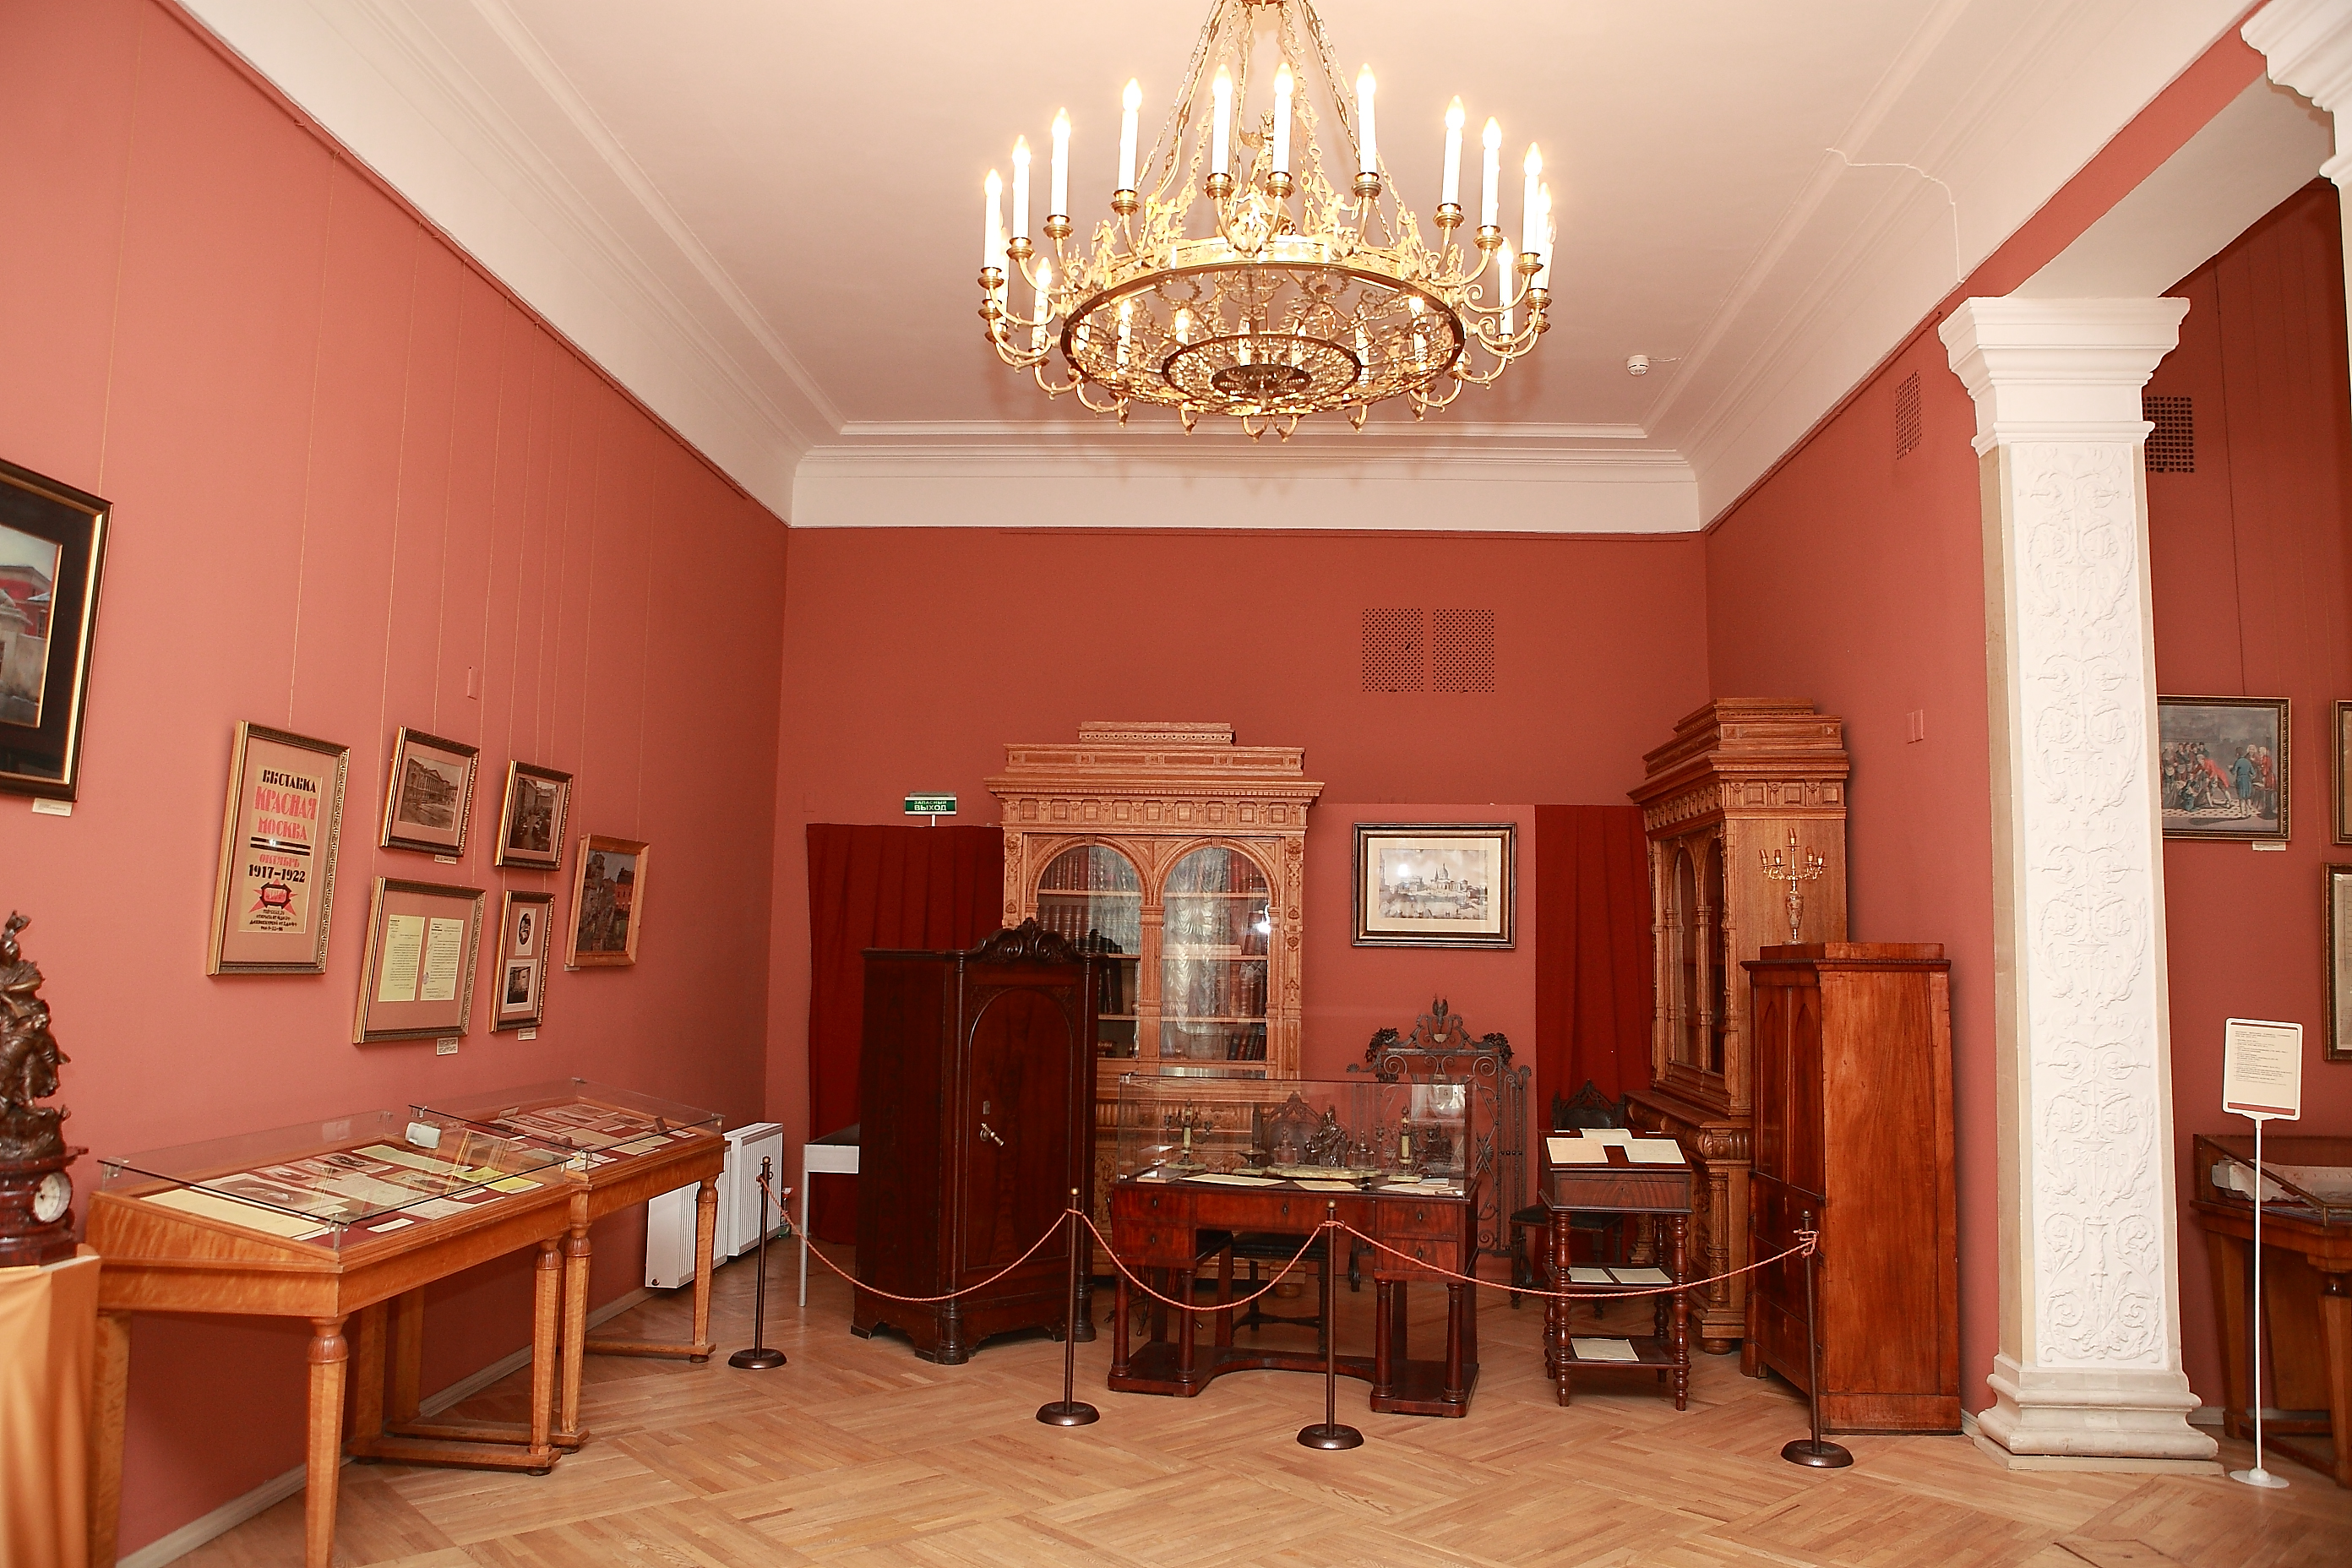 Государственный центральный музей современной истории России